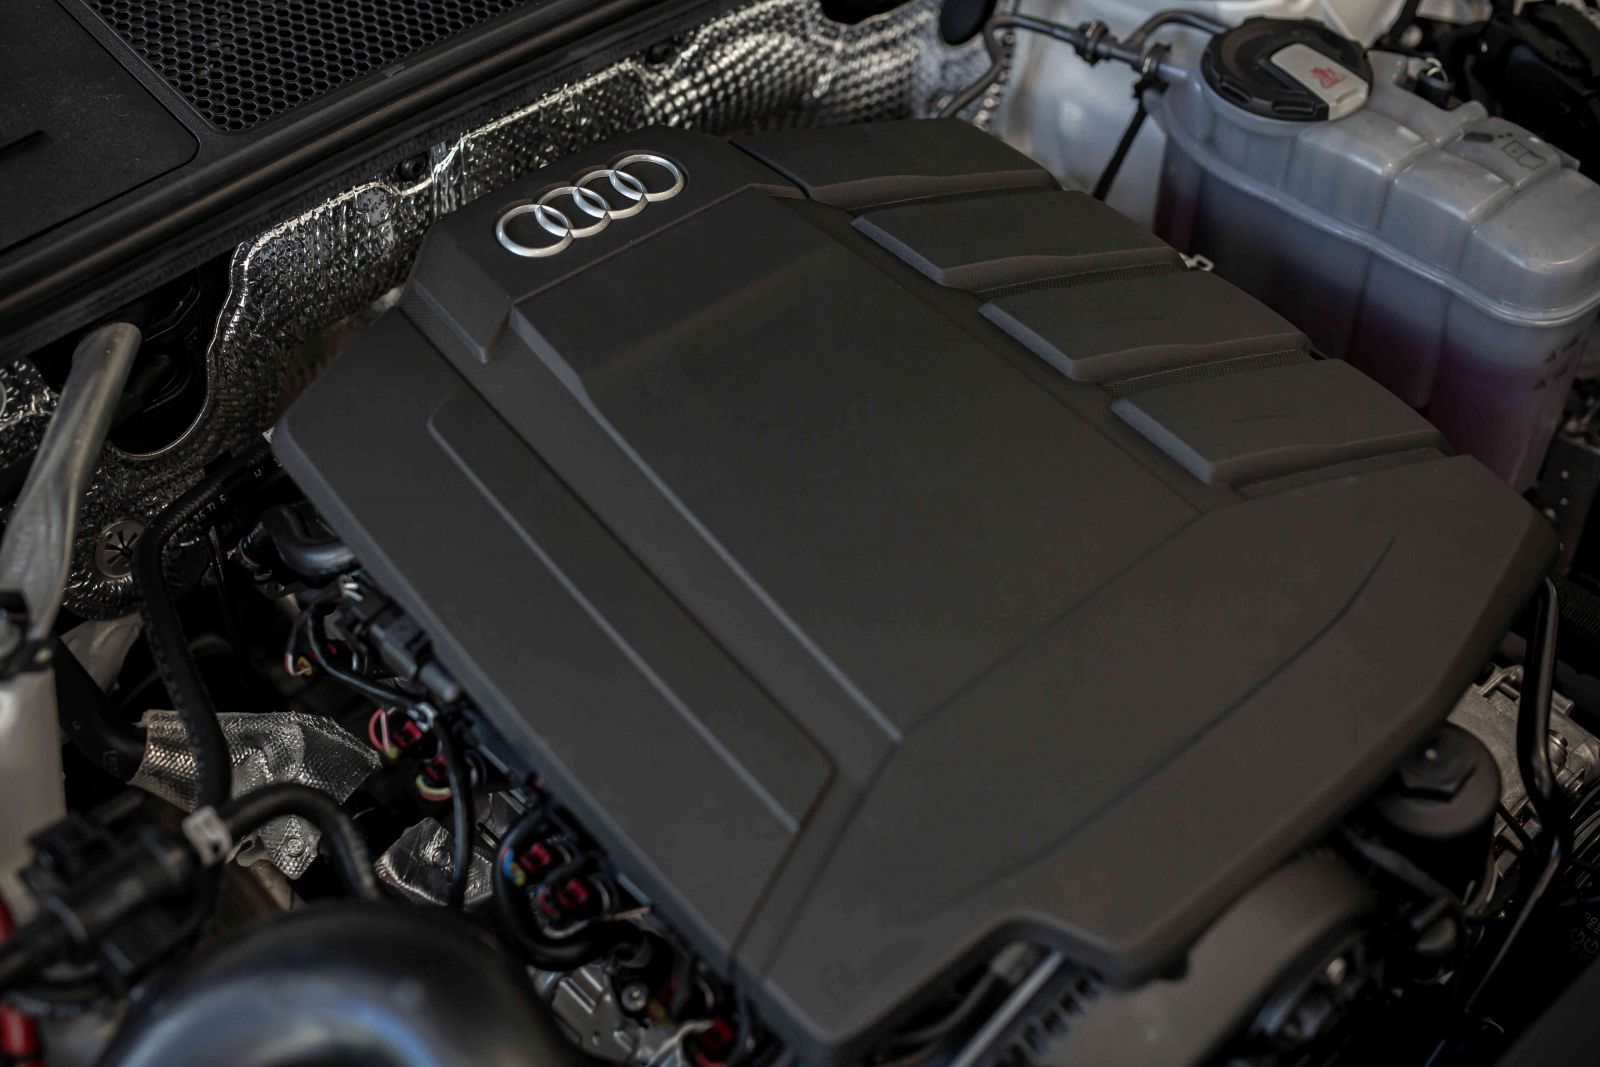  Cung cấp sức mạnh cho chiếc sedan cỡ trung nhà Audi là khối động cơ 2.0L TFSI 4 xi lanh thẳng hàng